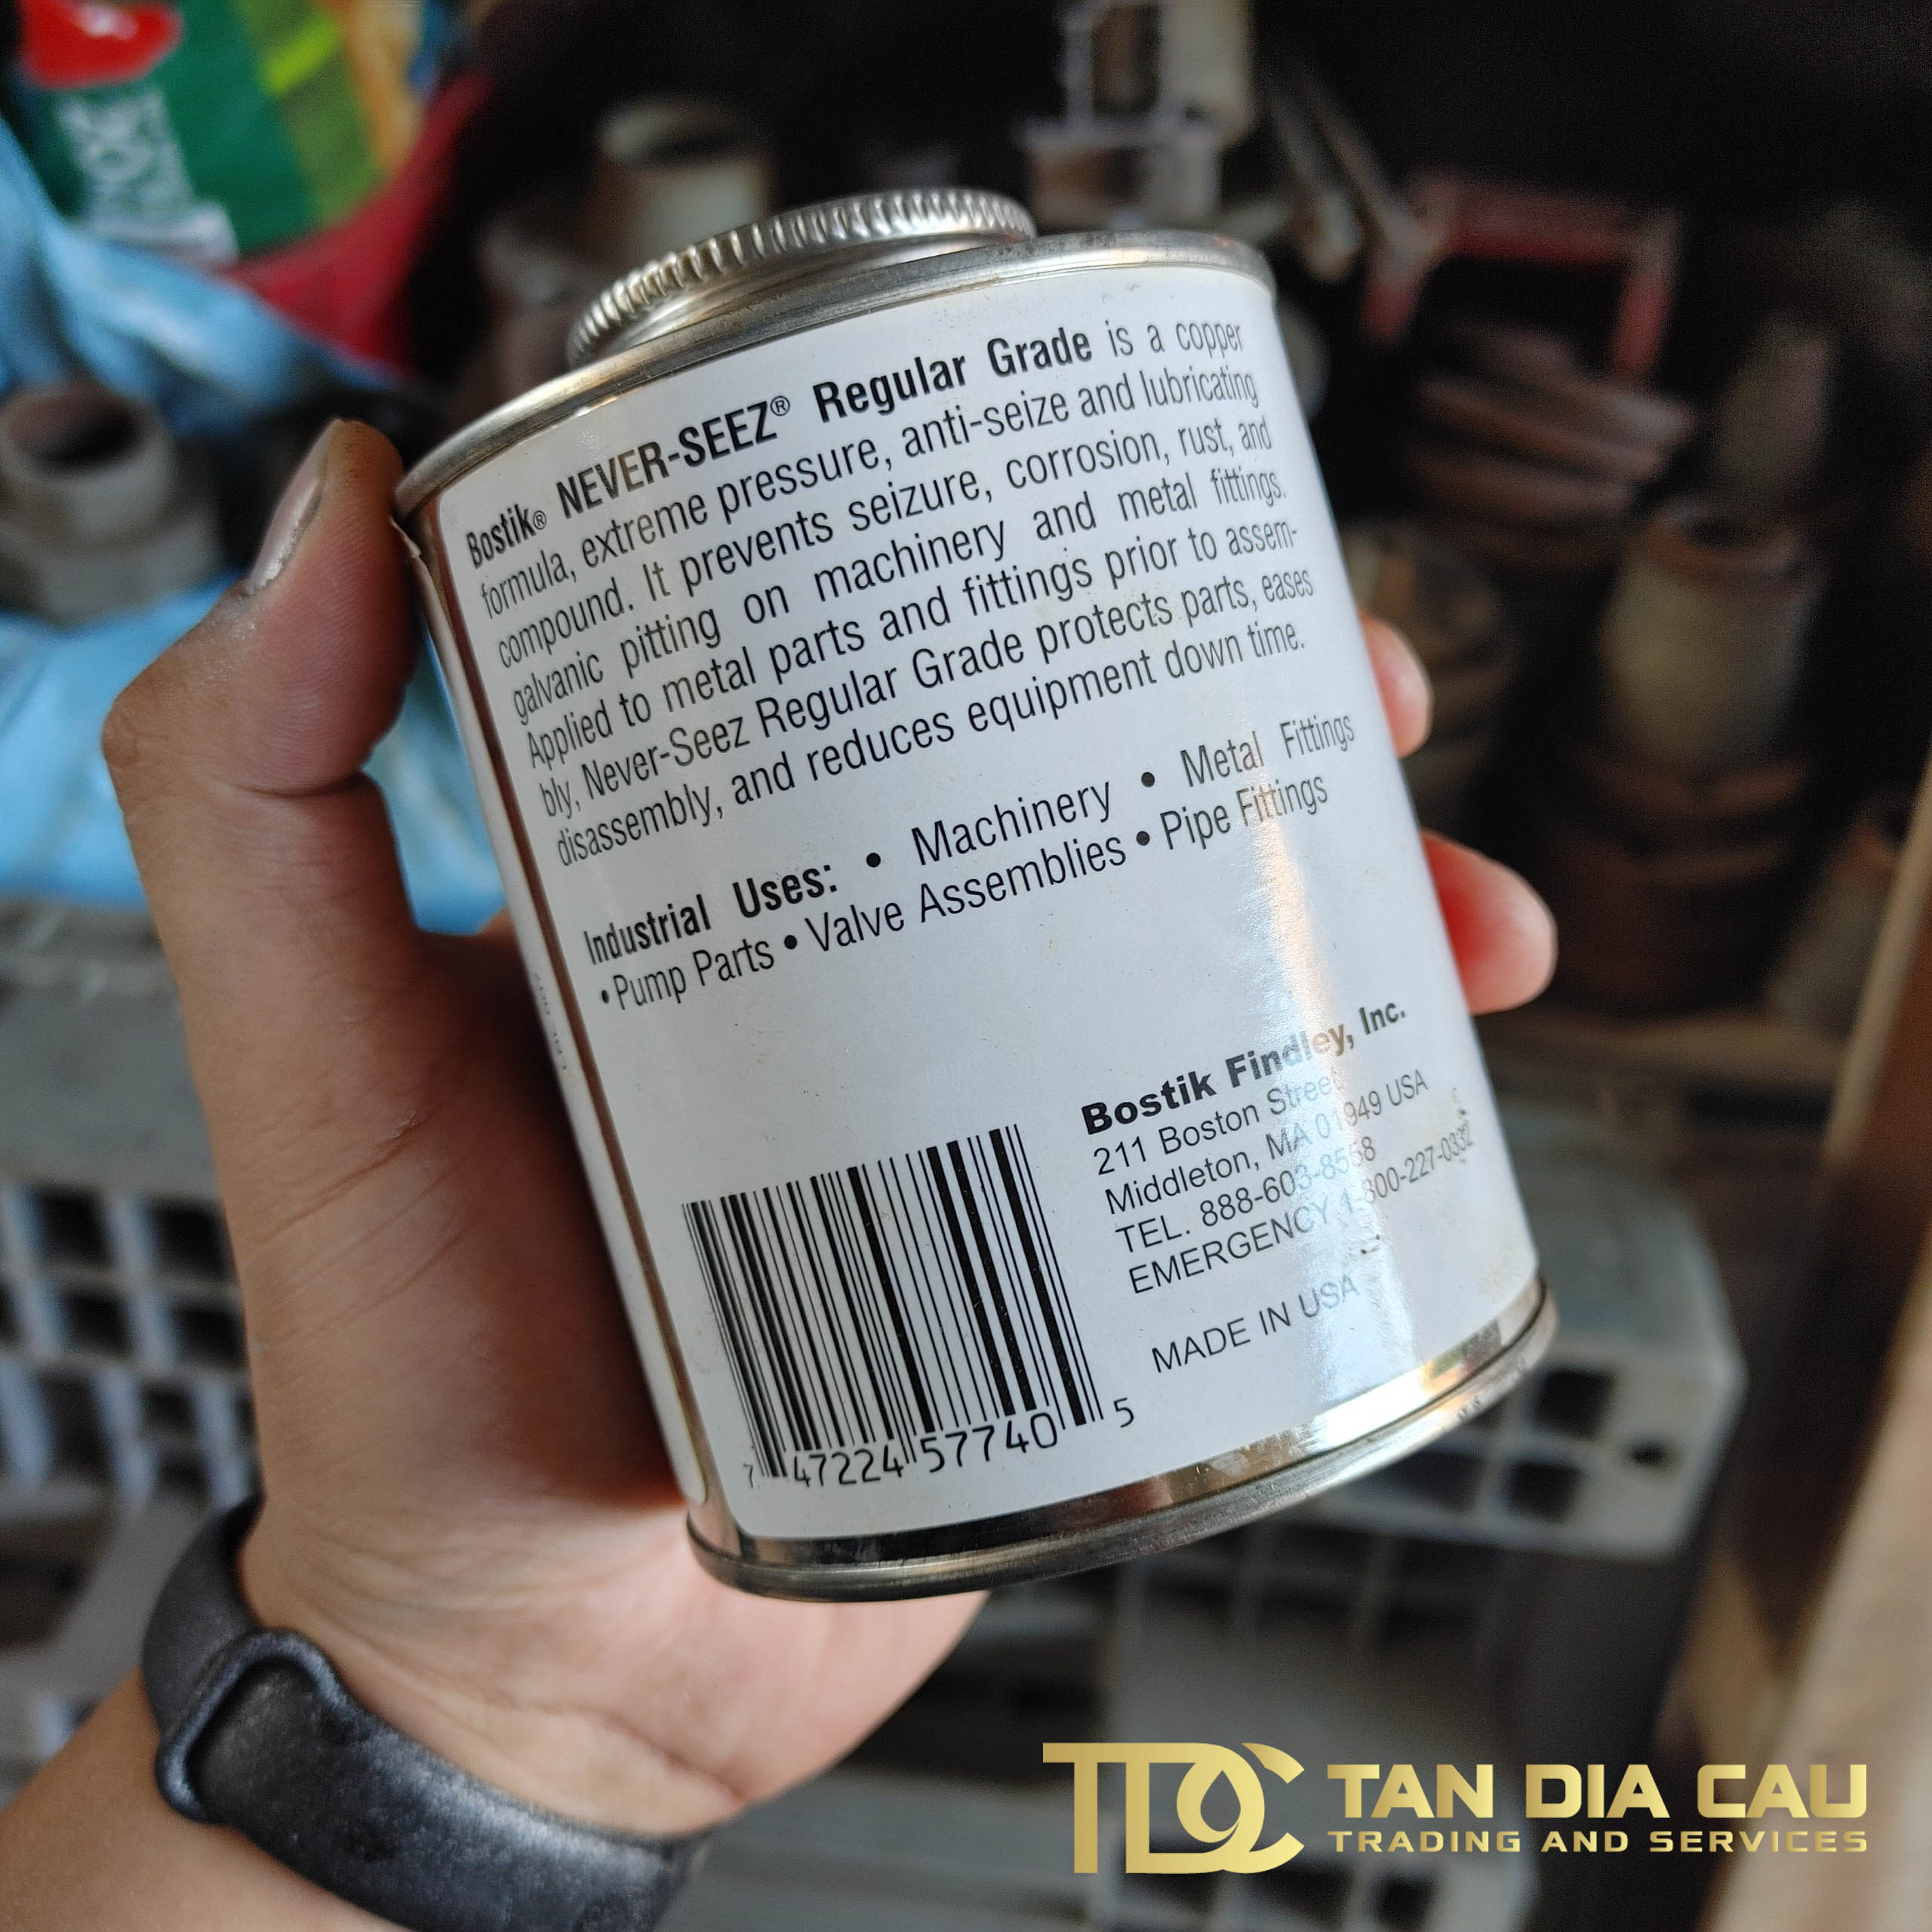 Mỡ Đồng Never-Seez Regular Copper Grade Anti-Seize - Bôi trơn và chống ăn mòn - Tandiacau